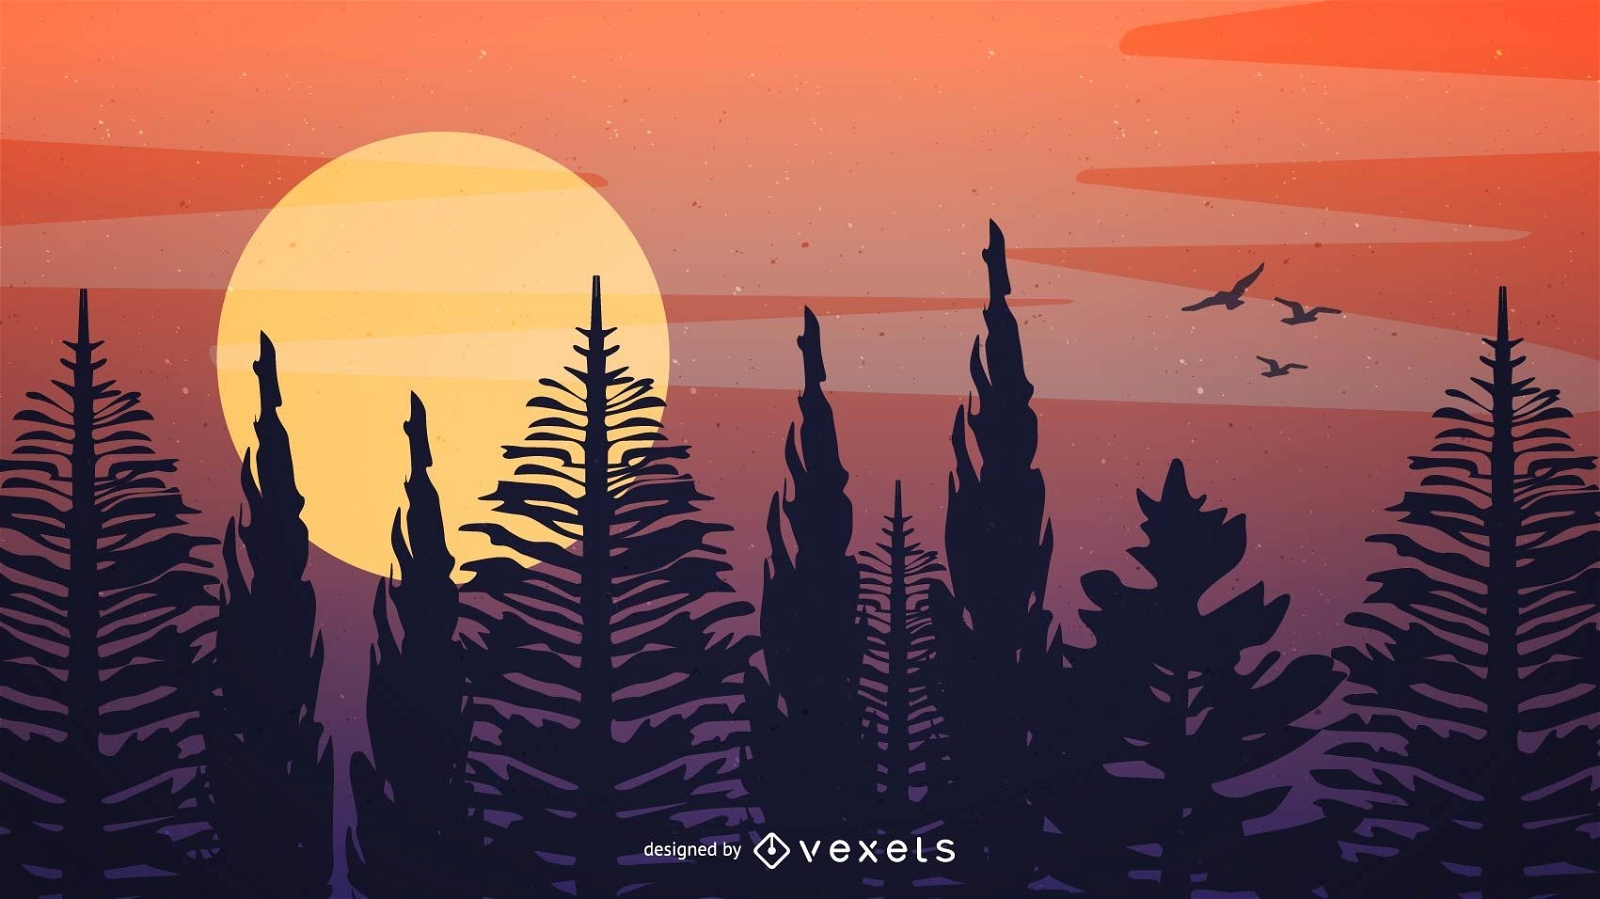 Sunset forest illustration design